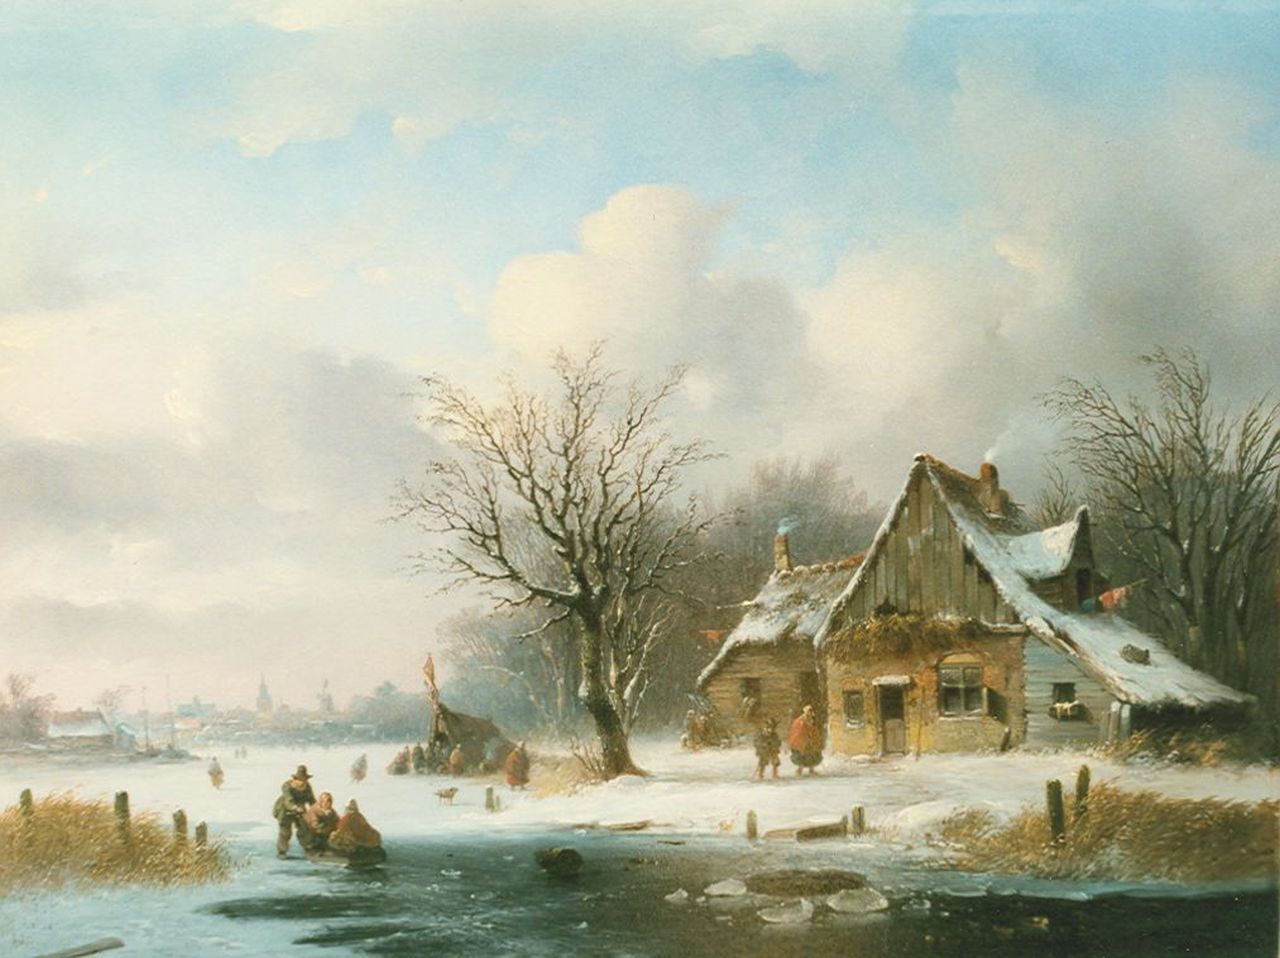 Stok J. van der | Jacobus van der Stok, Skaters and a 'koek en zopie' on the ice, oil on panel 35.5 x 46.4 cm